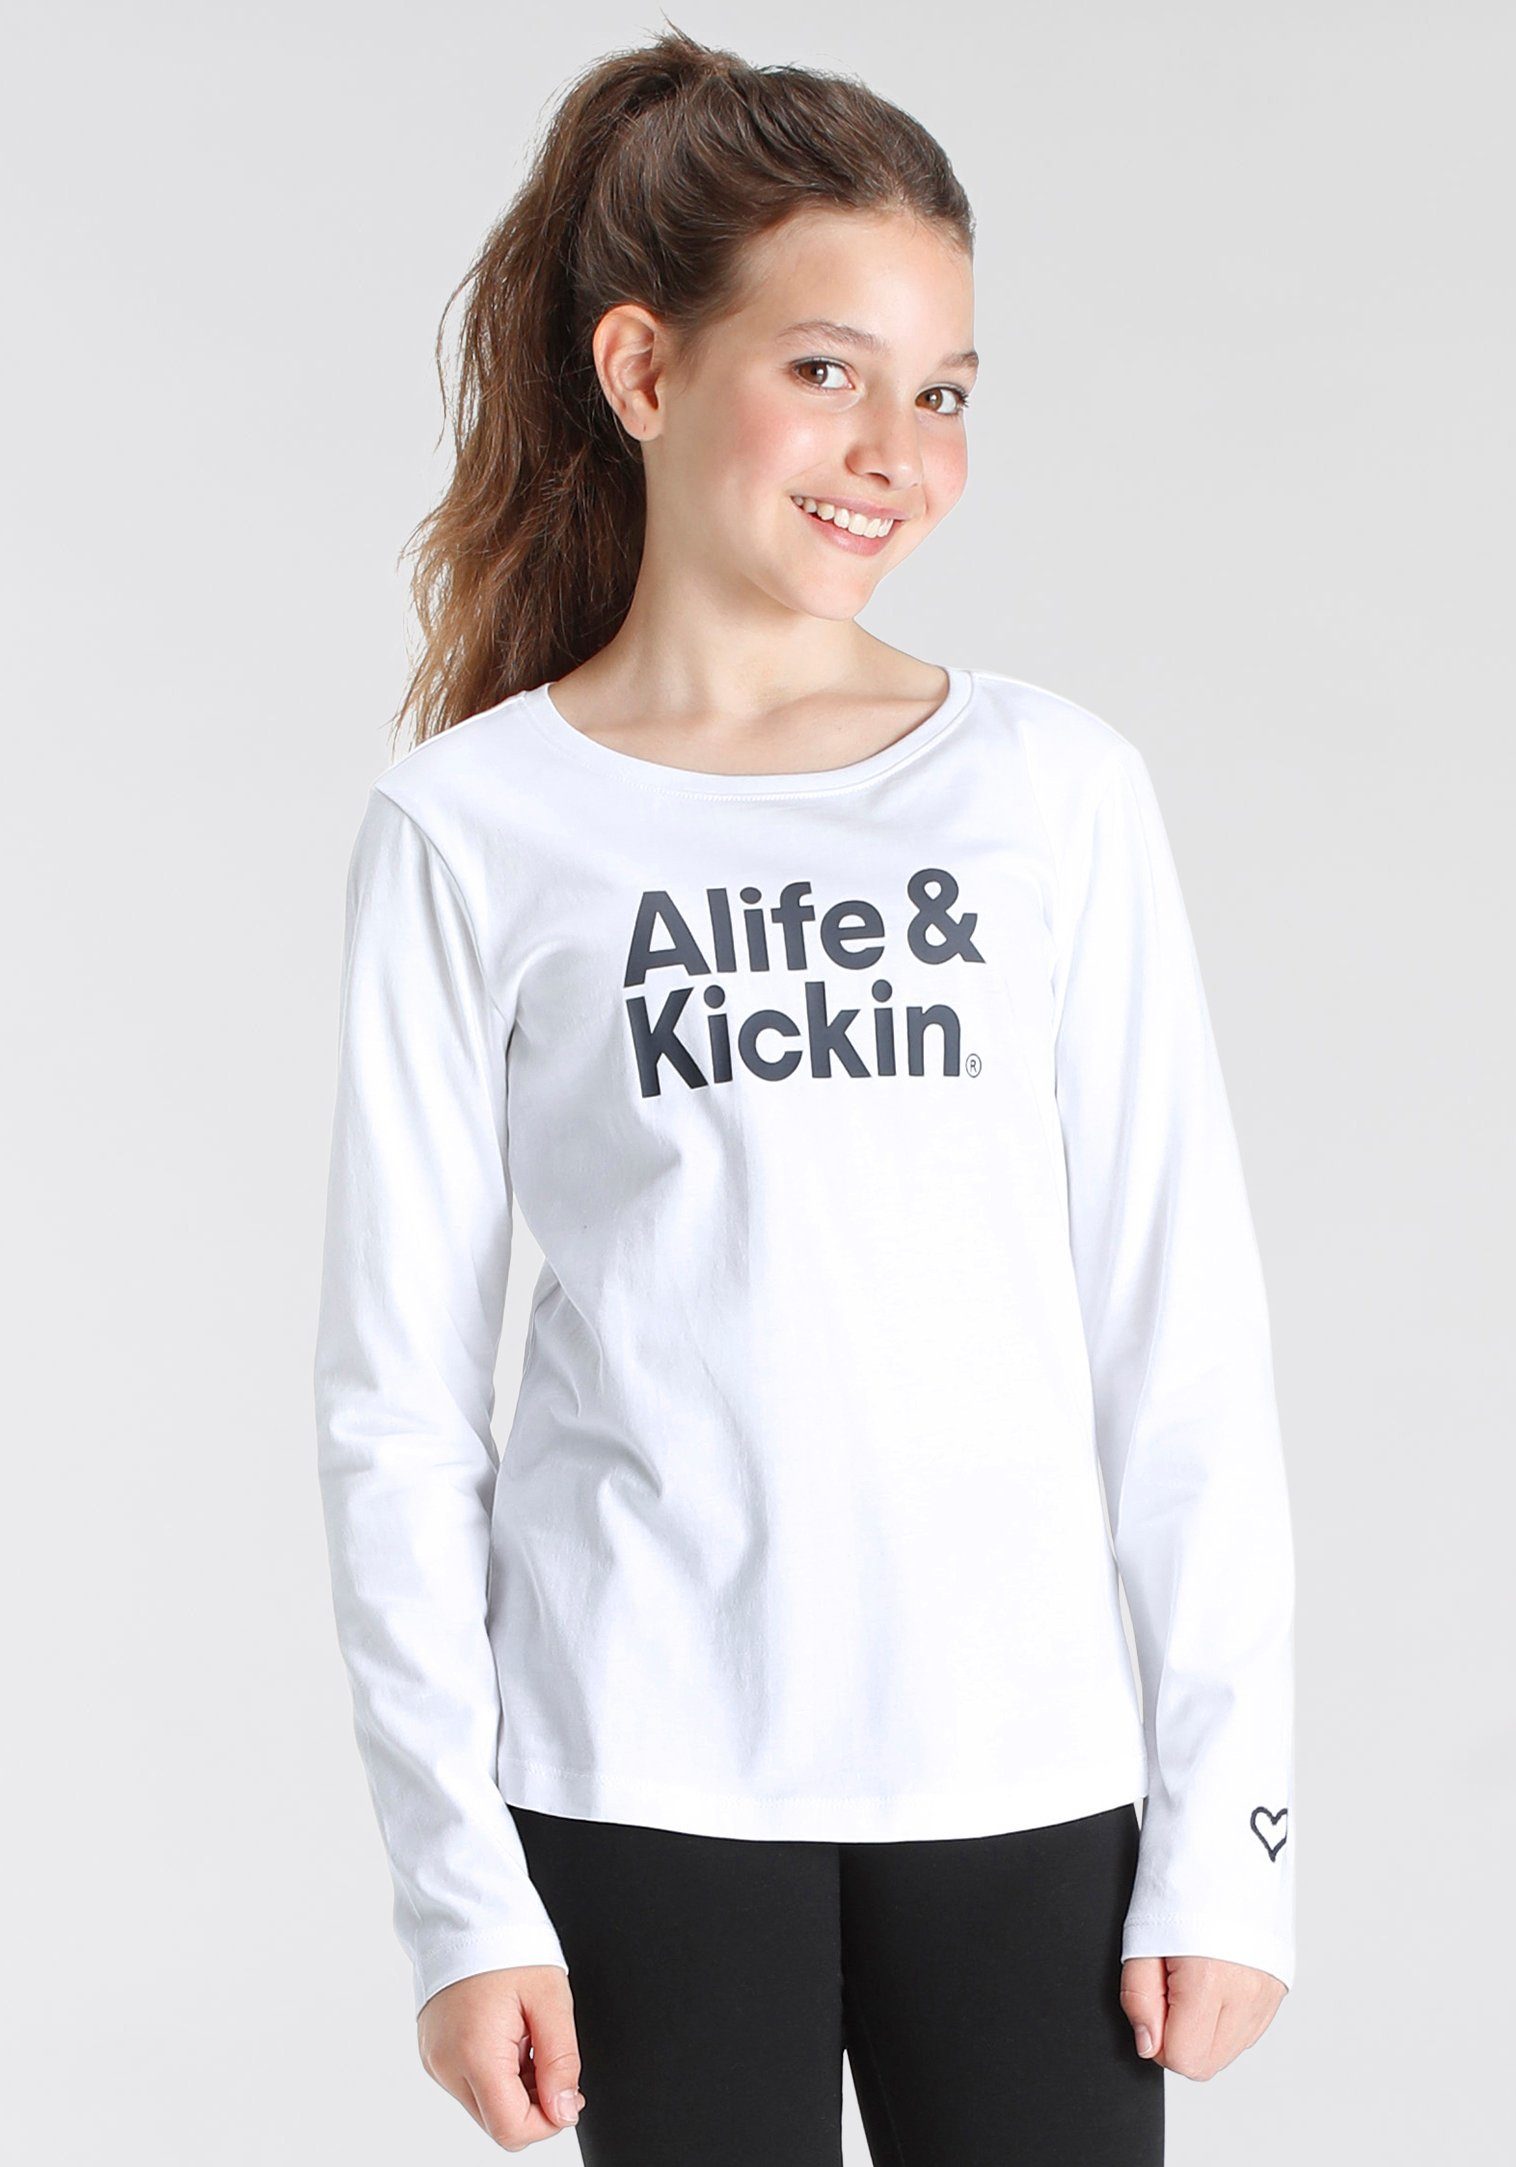 Kids. Langarmshirt Logo Kickin NEUE für MARKE! & Alife Druck Alife & Kickin mit